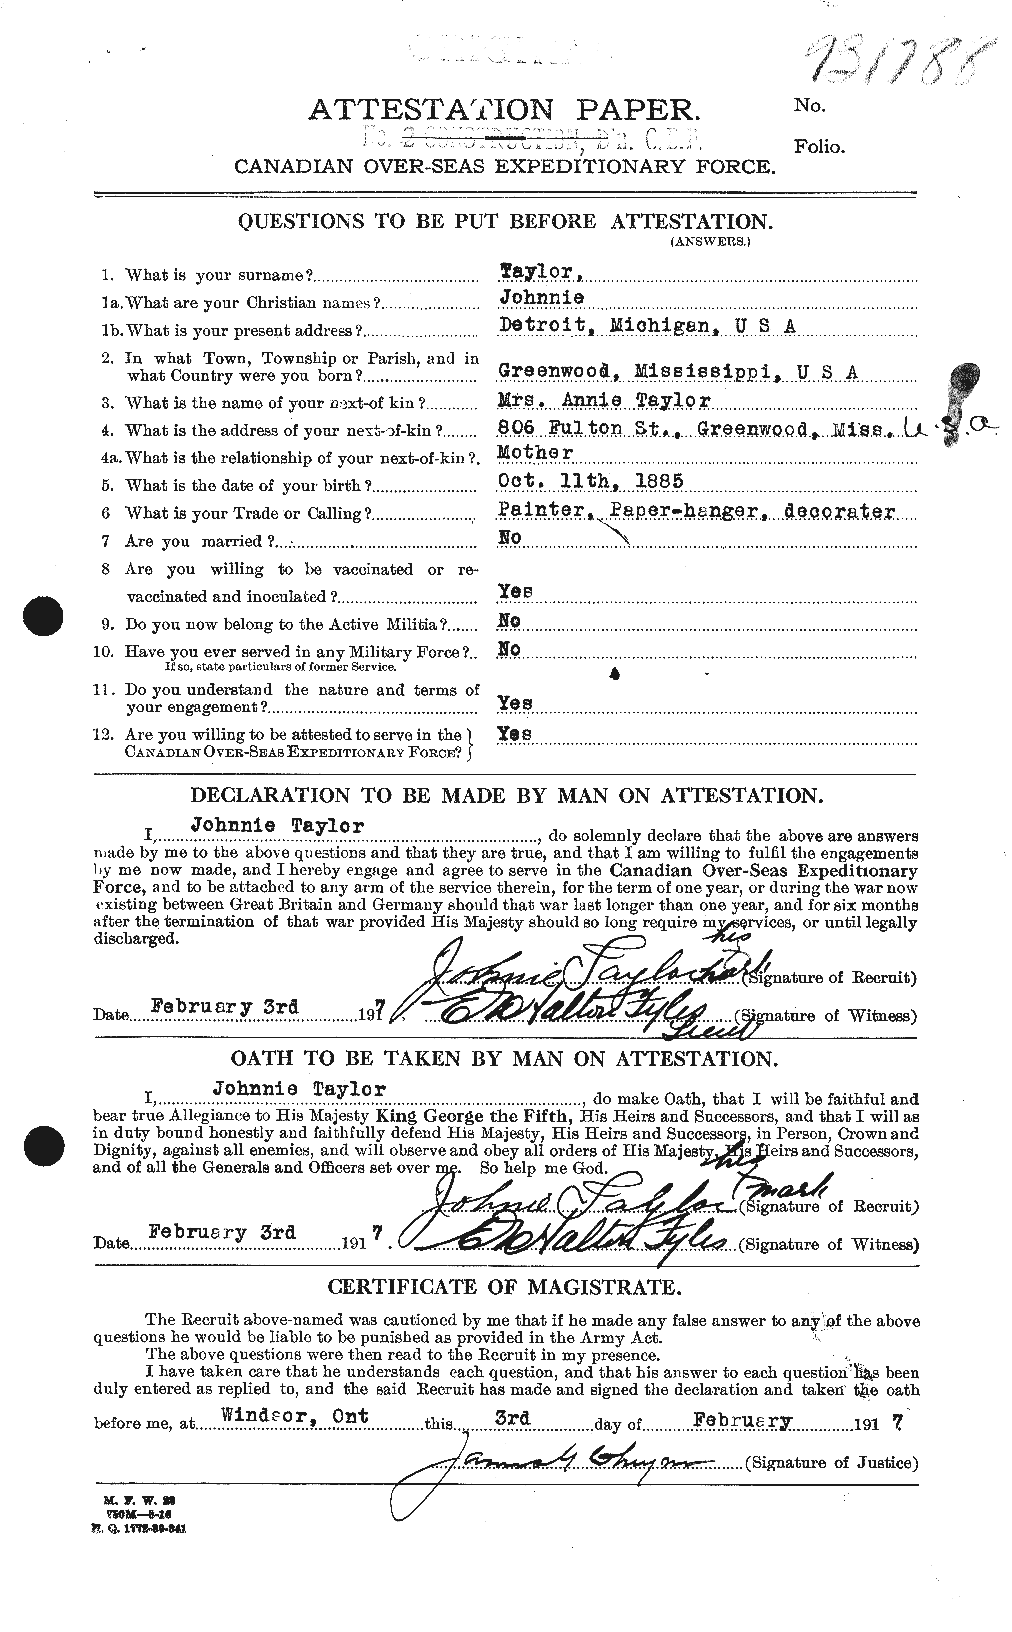 Dossiers du Personnel de la Première Guerre mondiale - CEC 627554a